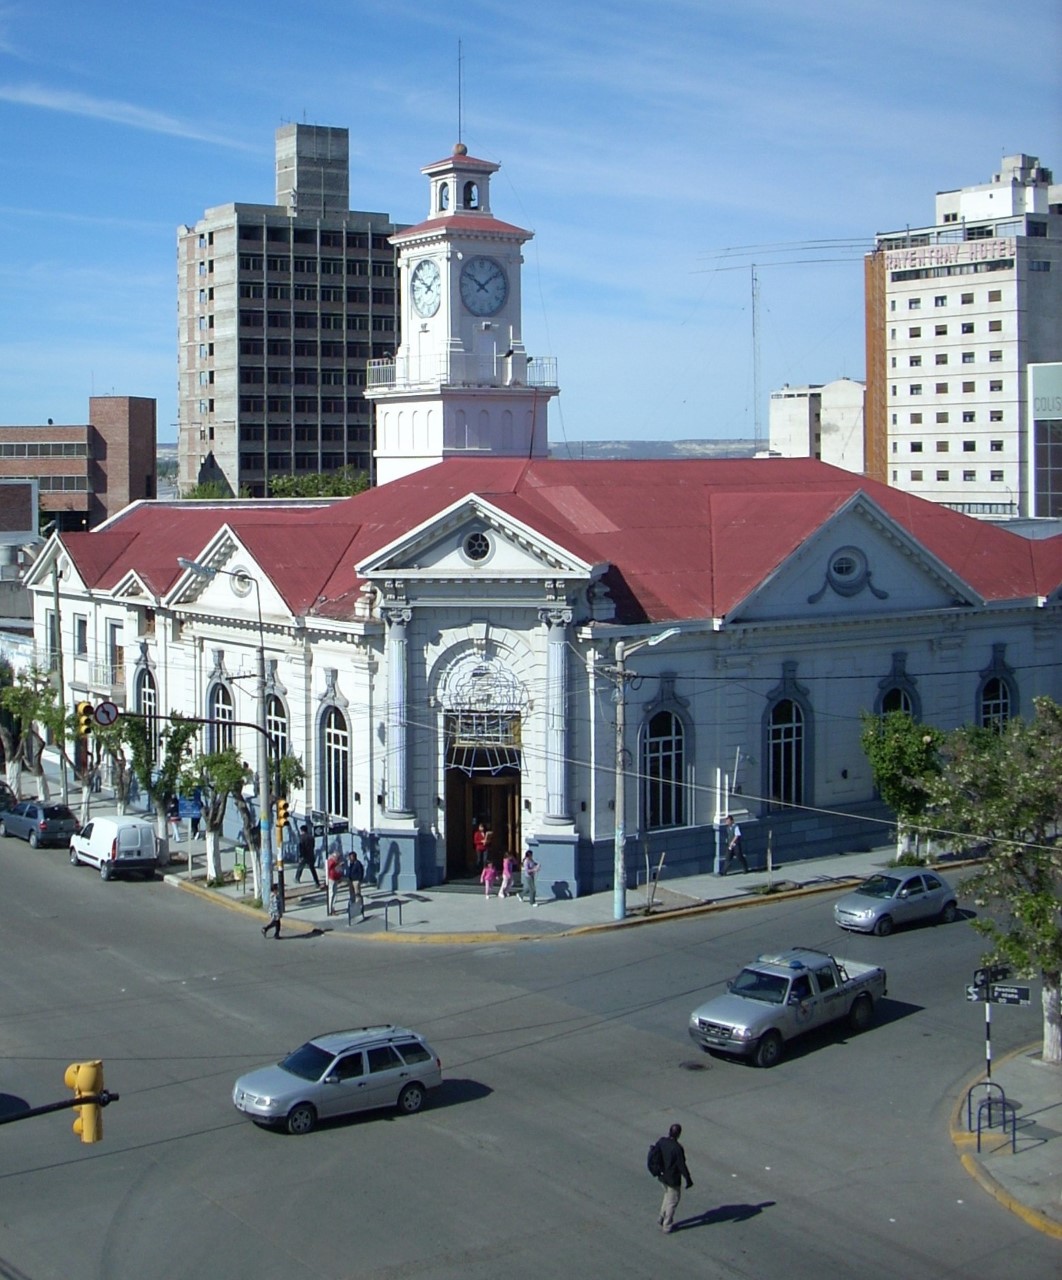 Terenzi aseguró que el Banco Nación le confirmó la decisión de que trasladará a Comodoro Rivadavia la gerencia zonal de Trelew